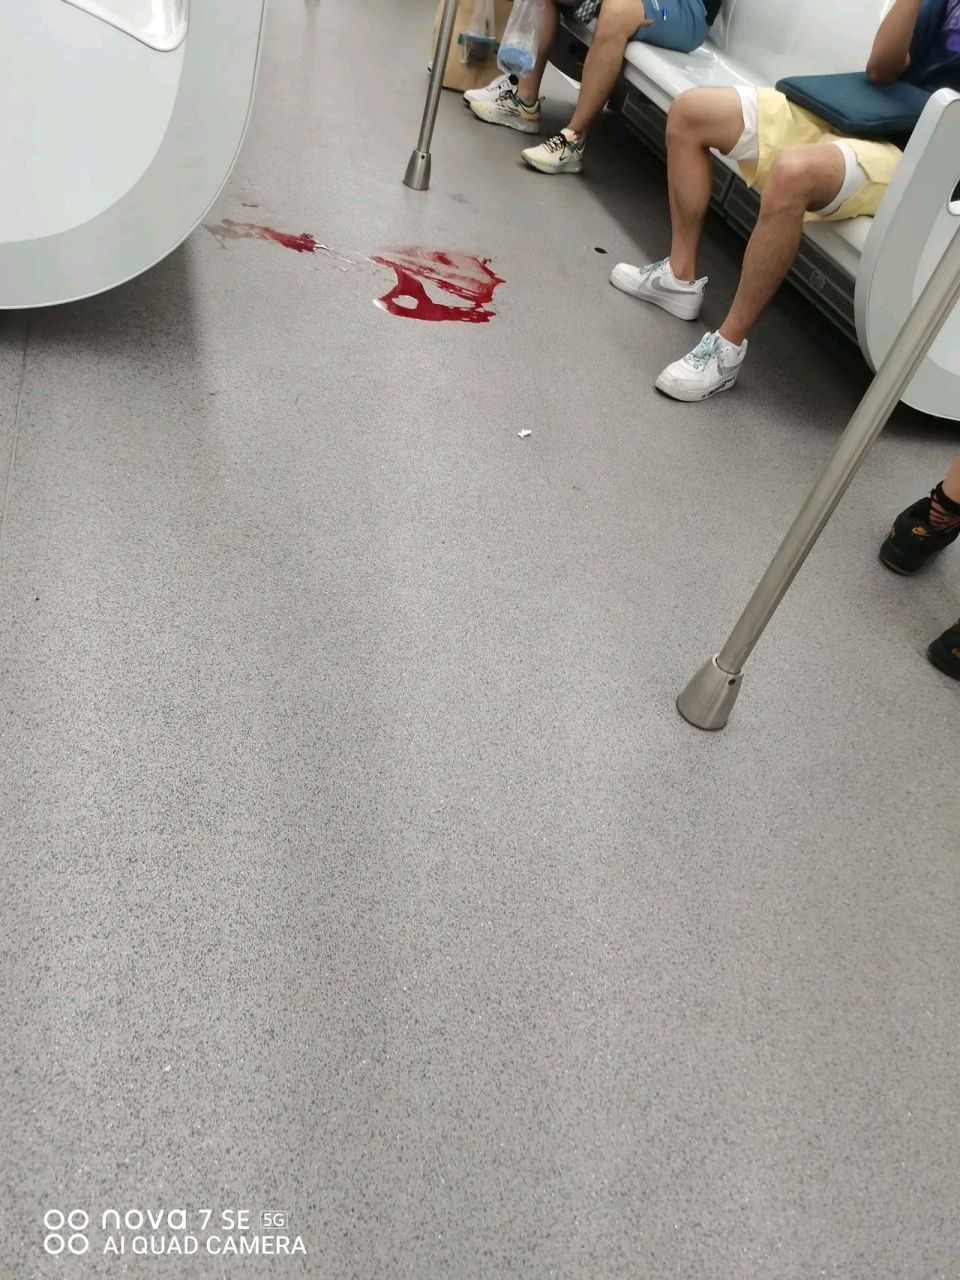 地铁二号线,有个女的突然吐血昏迷,直接倒在车厢地上,但是特别吓人,一